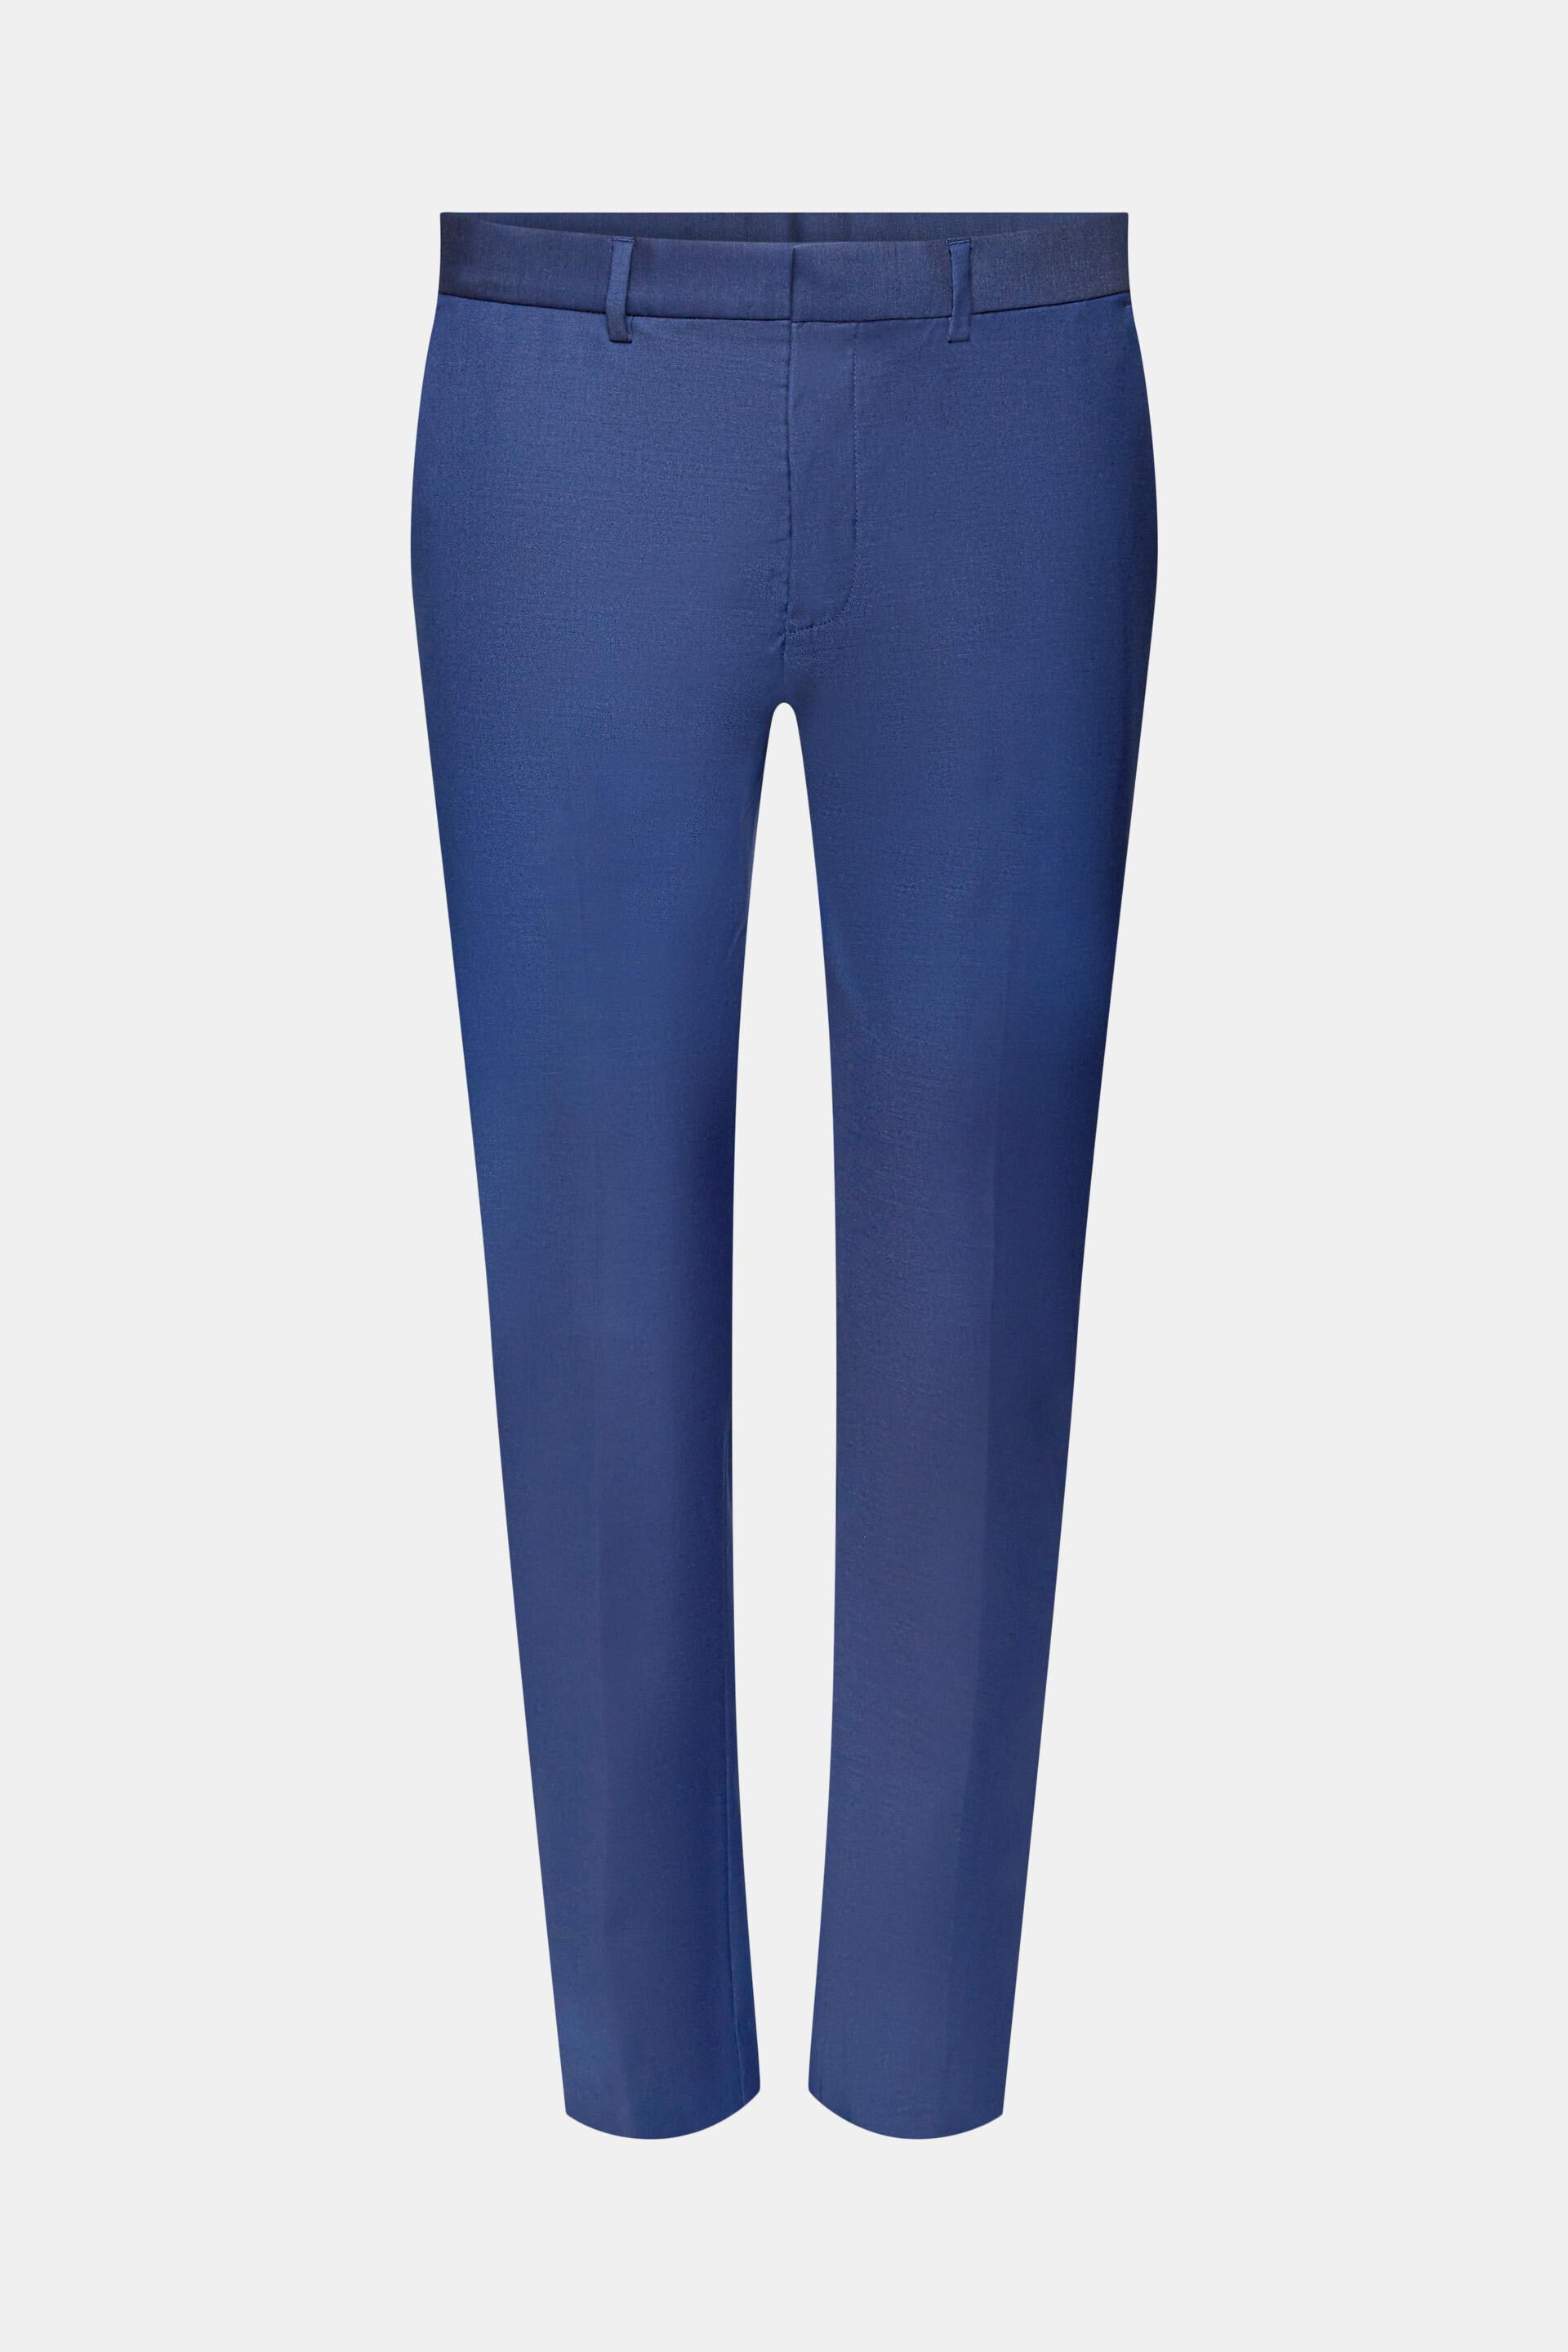 Kin Semi Plain Slim Fit Suit Trousers, Navy, 30R